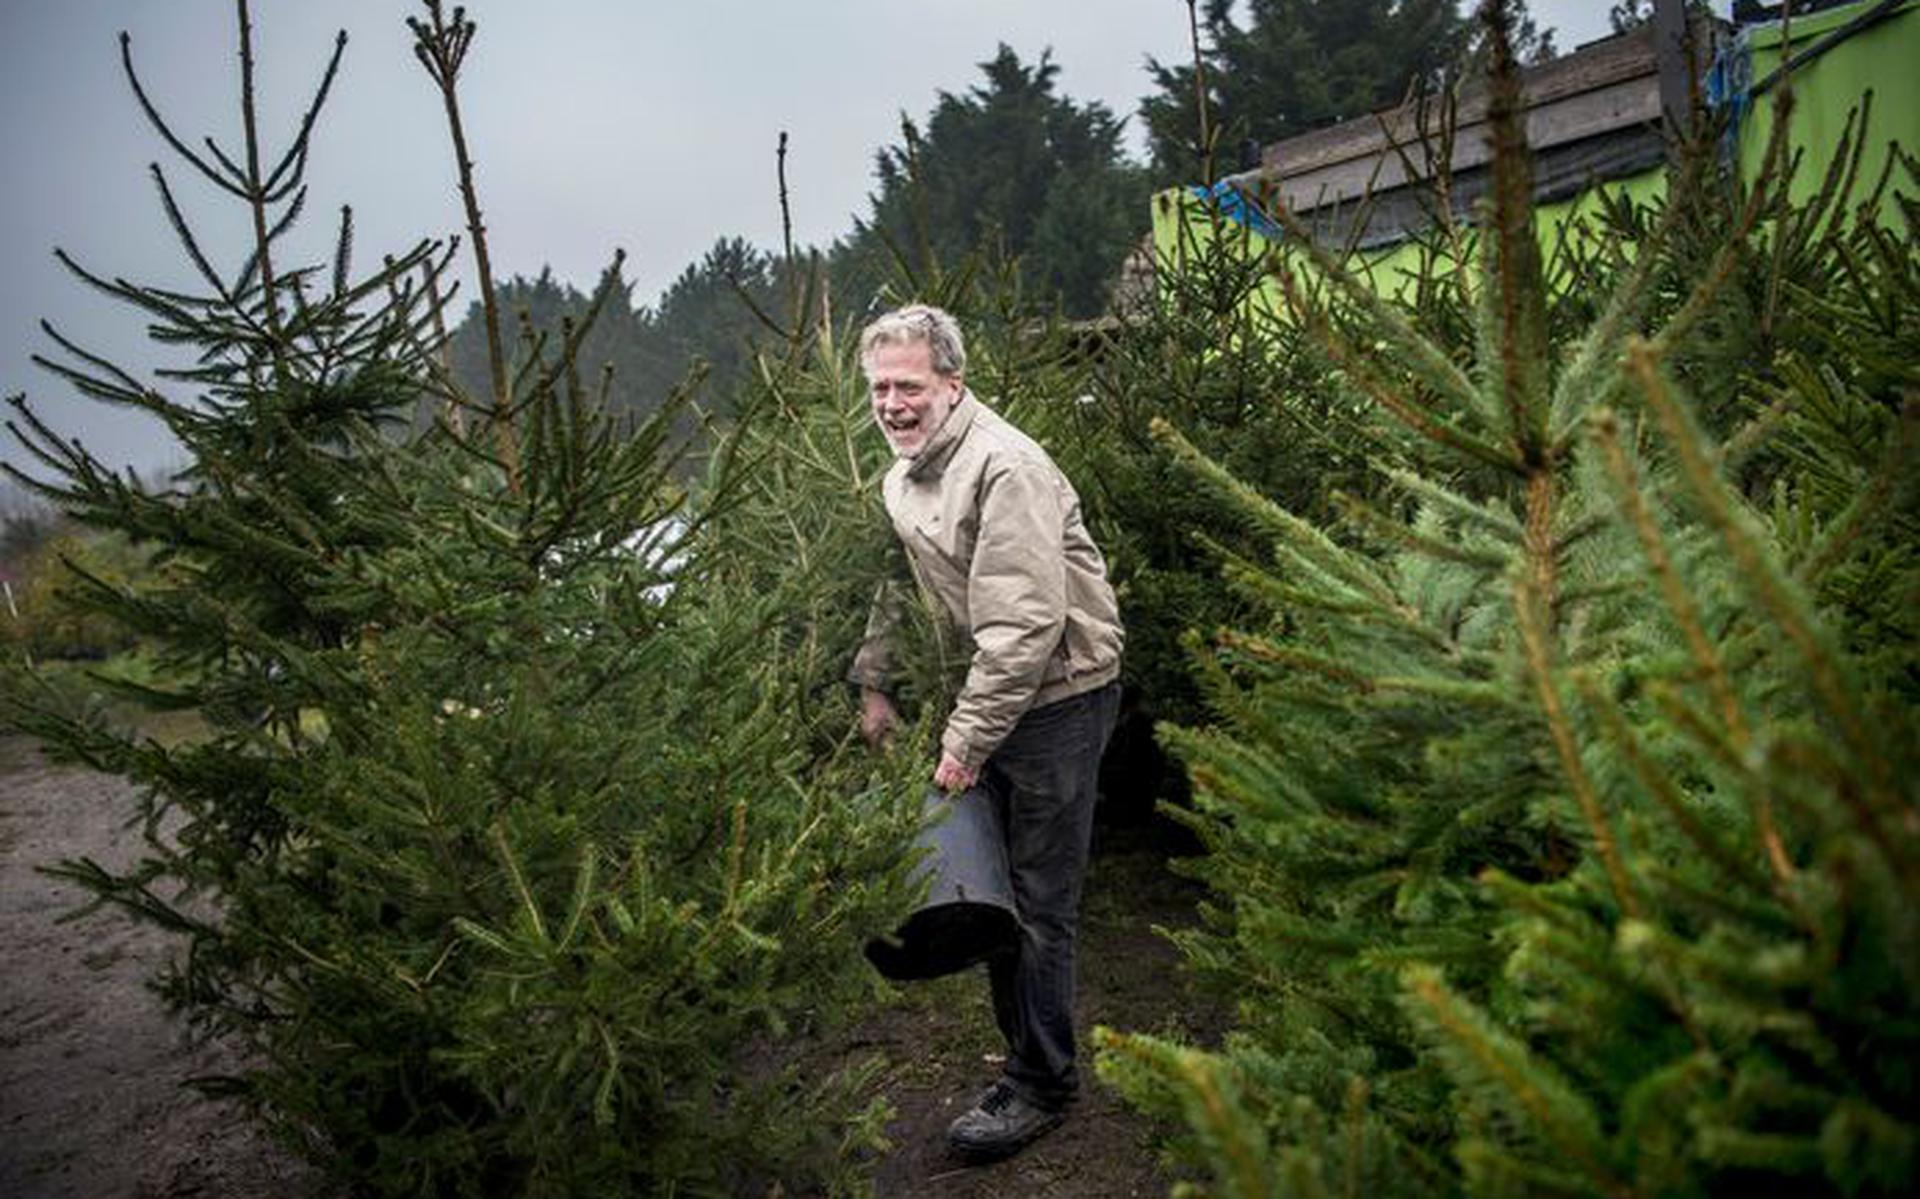 Frans Kerver uit Feerwerd zet de adoptiebomen klaar. Klanten kunnen elk jaar de kerstboom weer inleveren, zodat hij ‘overzomert’ en meerdere keren gebruikt kan worden. 